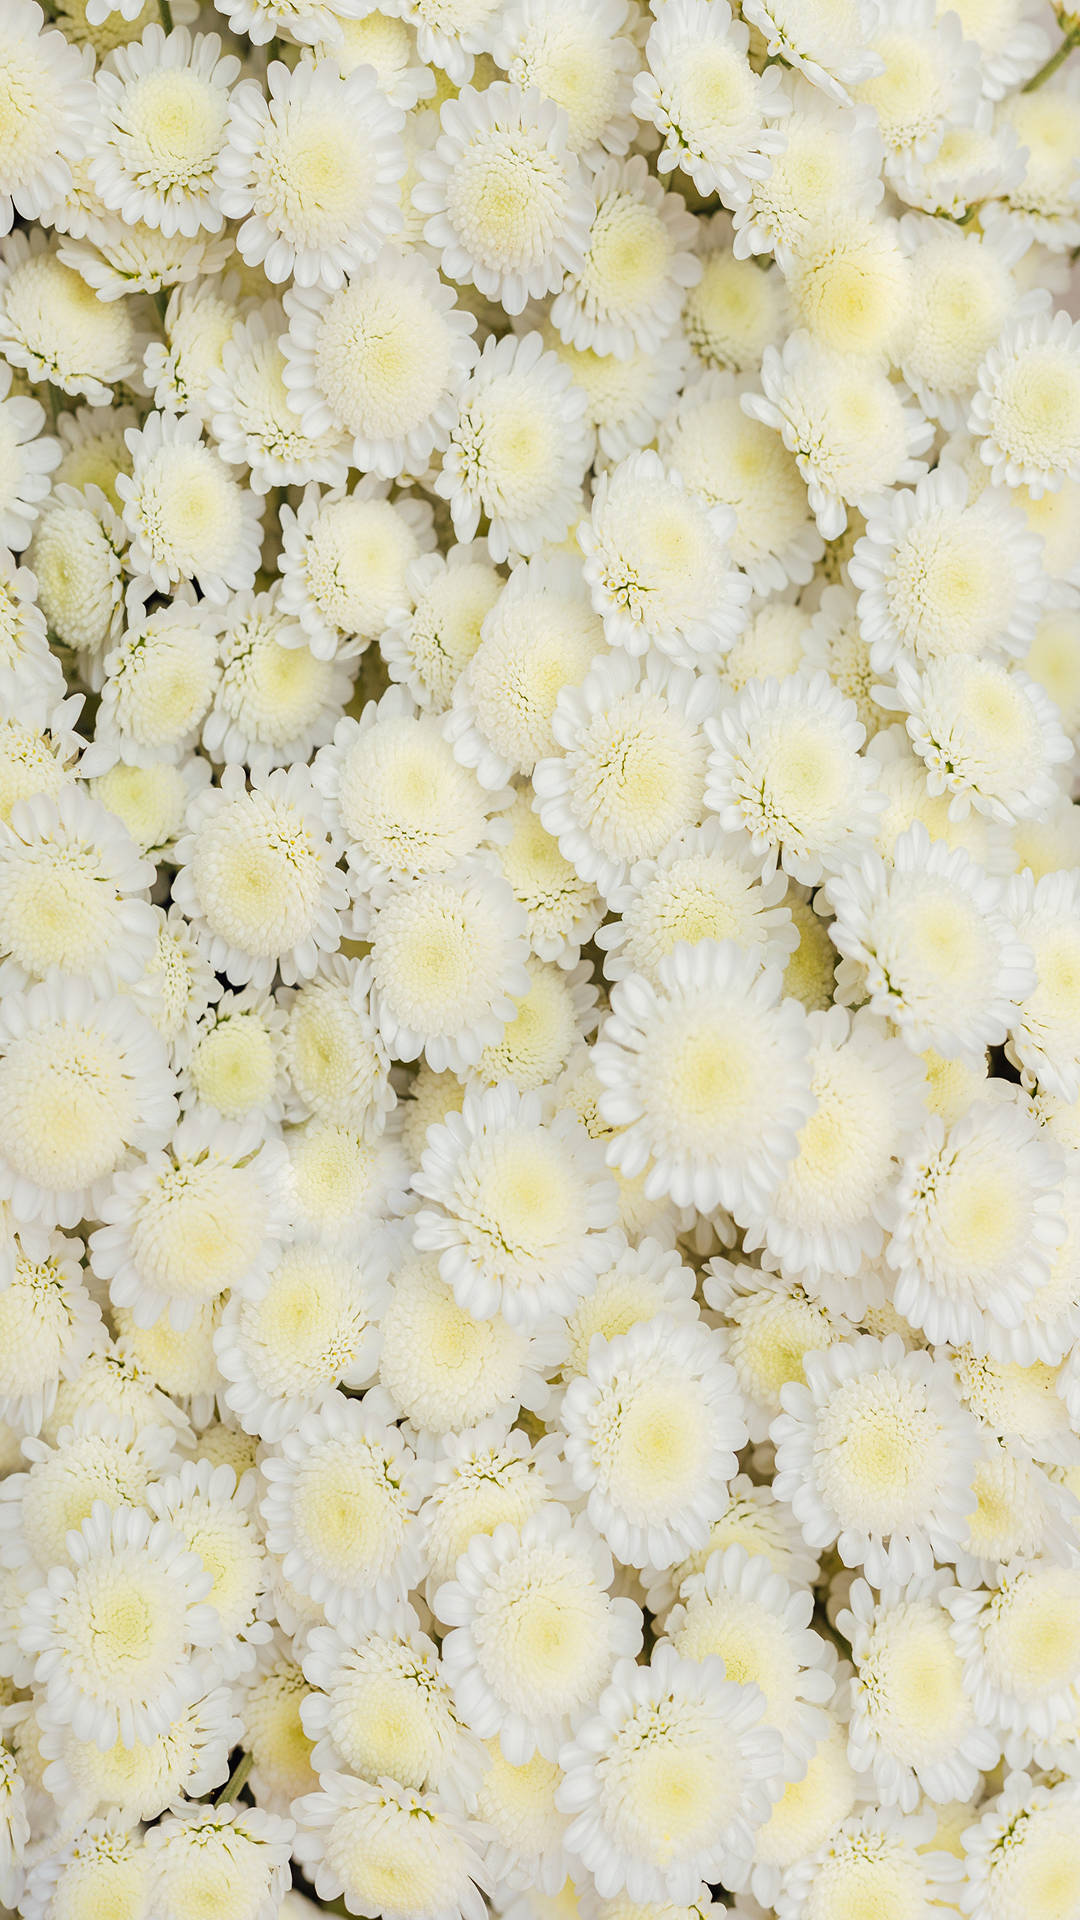 Instagram Story Hybrid White Daisy Flowers Wallpaper